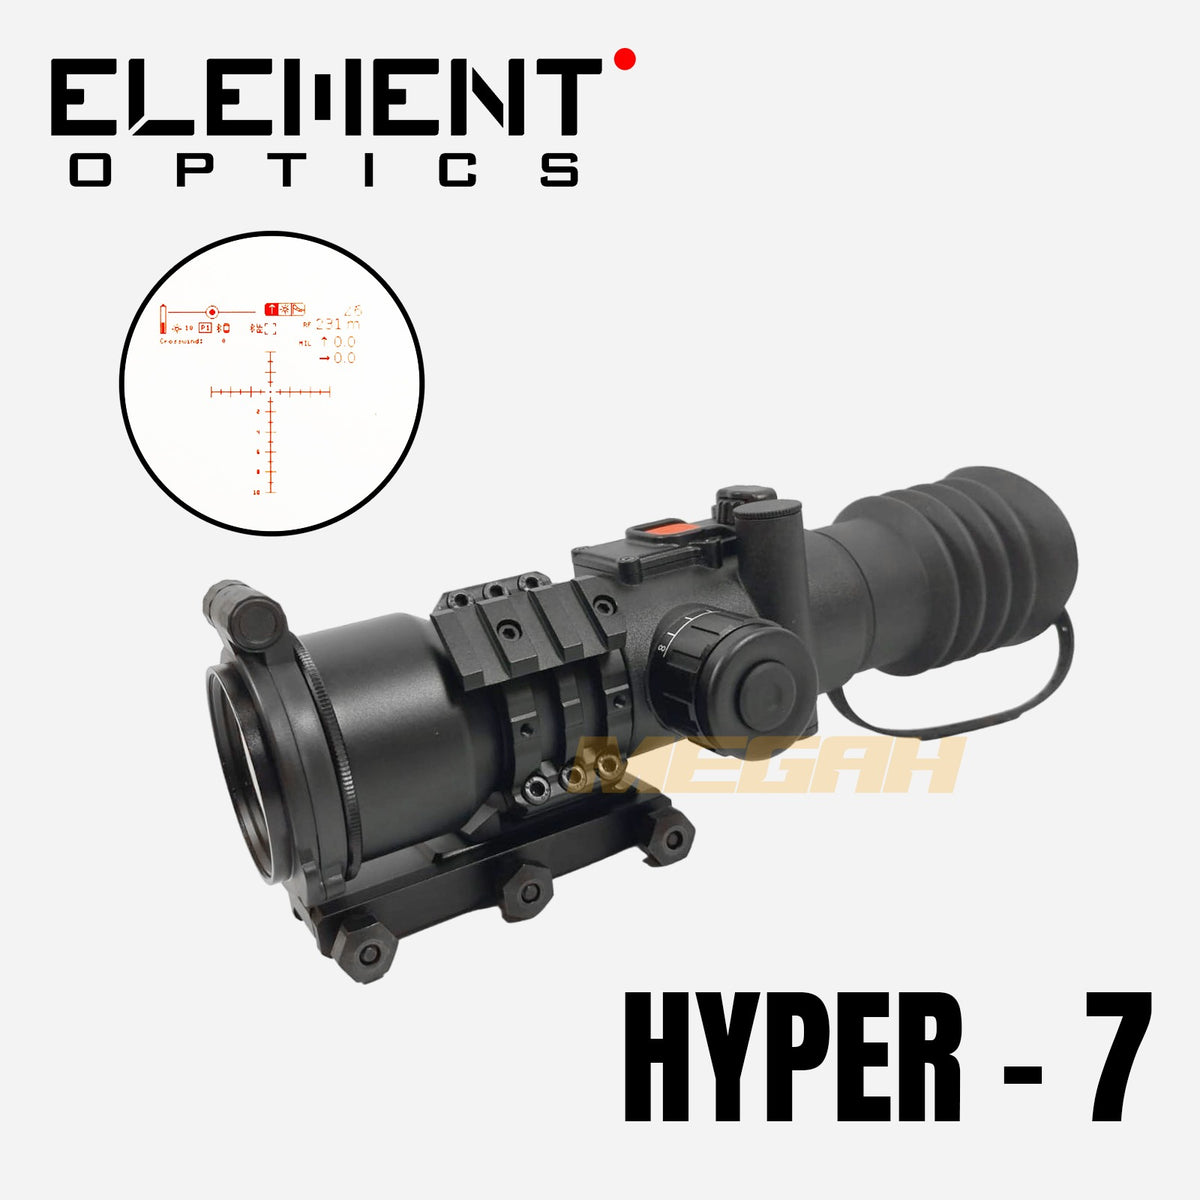 ELEMENT OPTICS HYPER-7